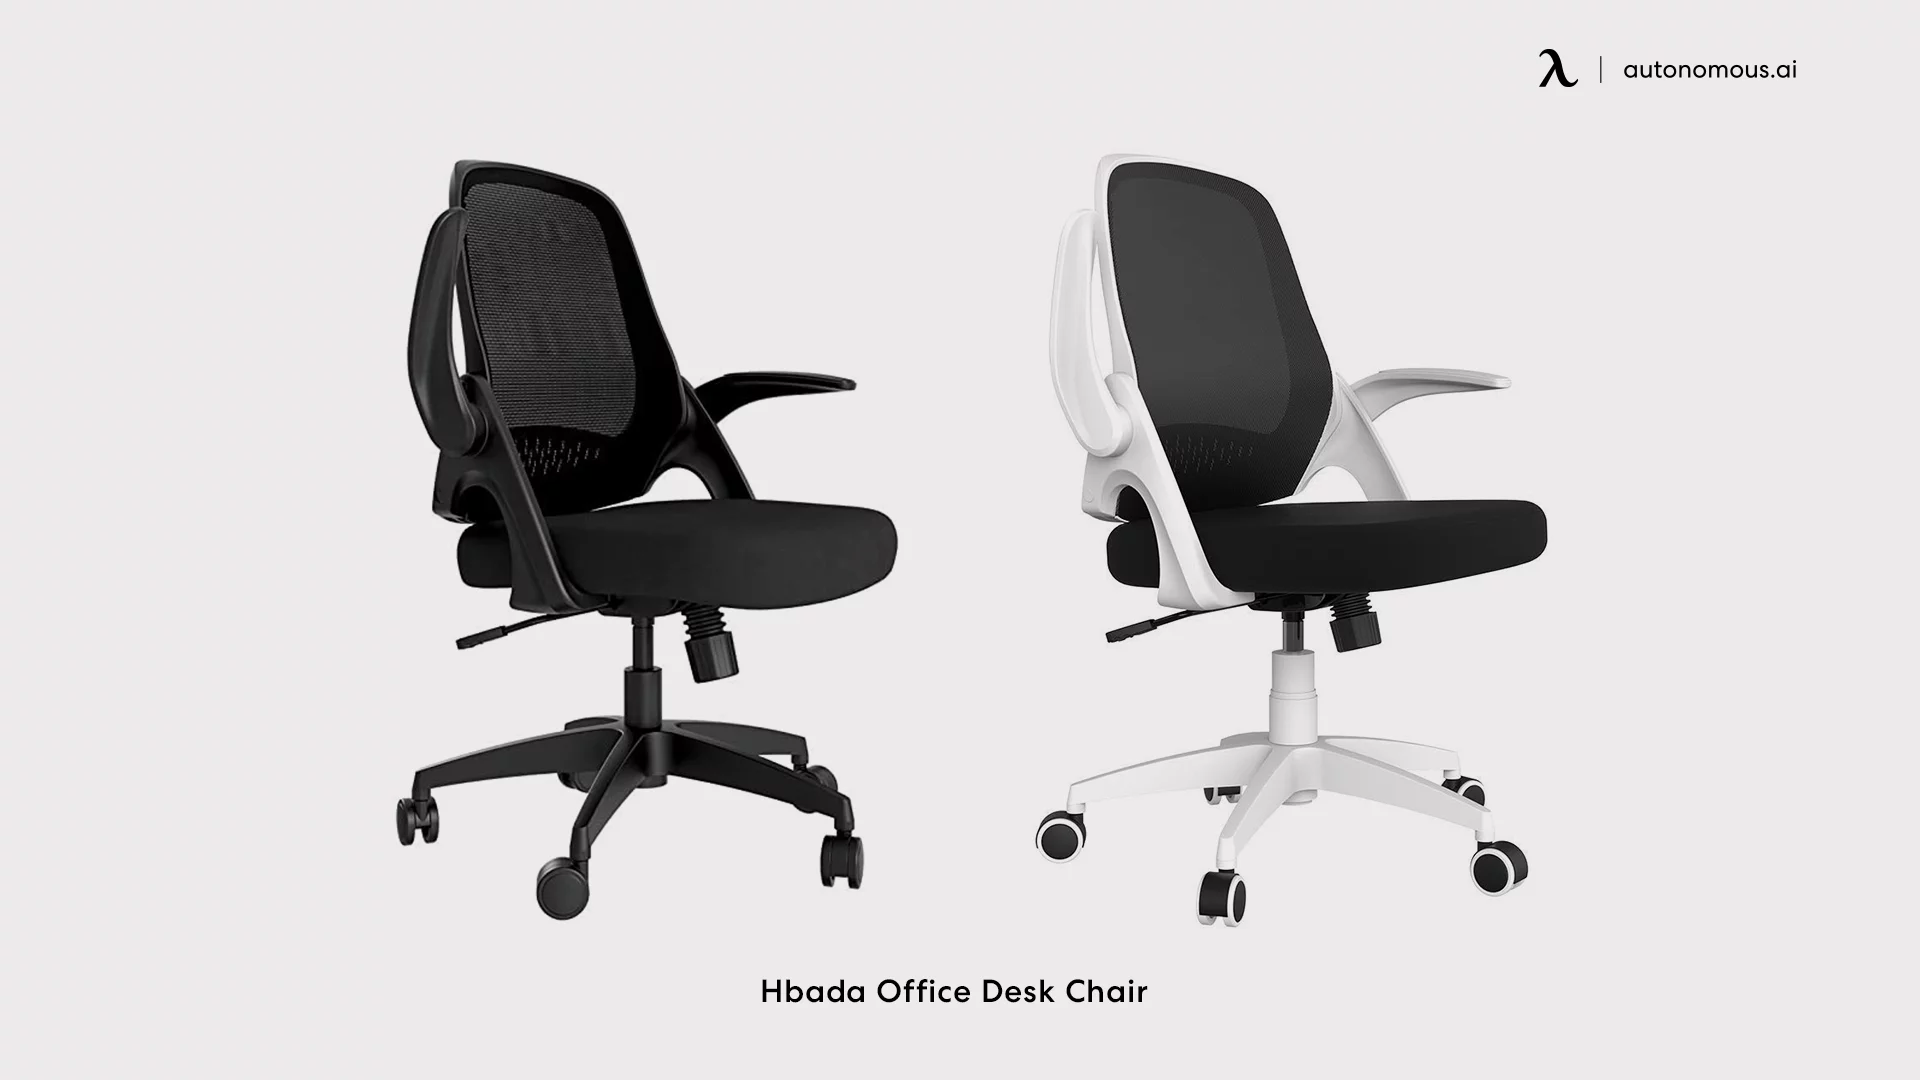 Hbada office chair under $200